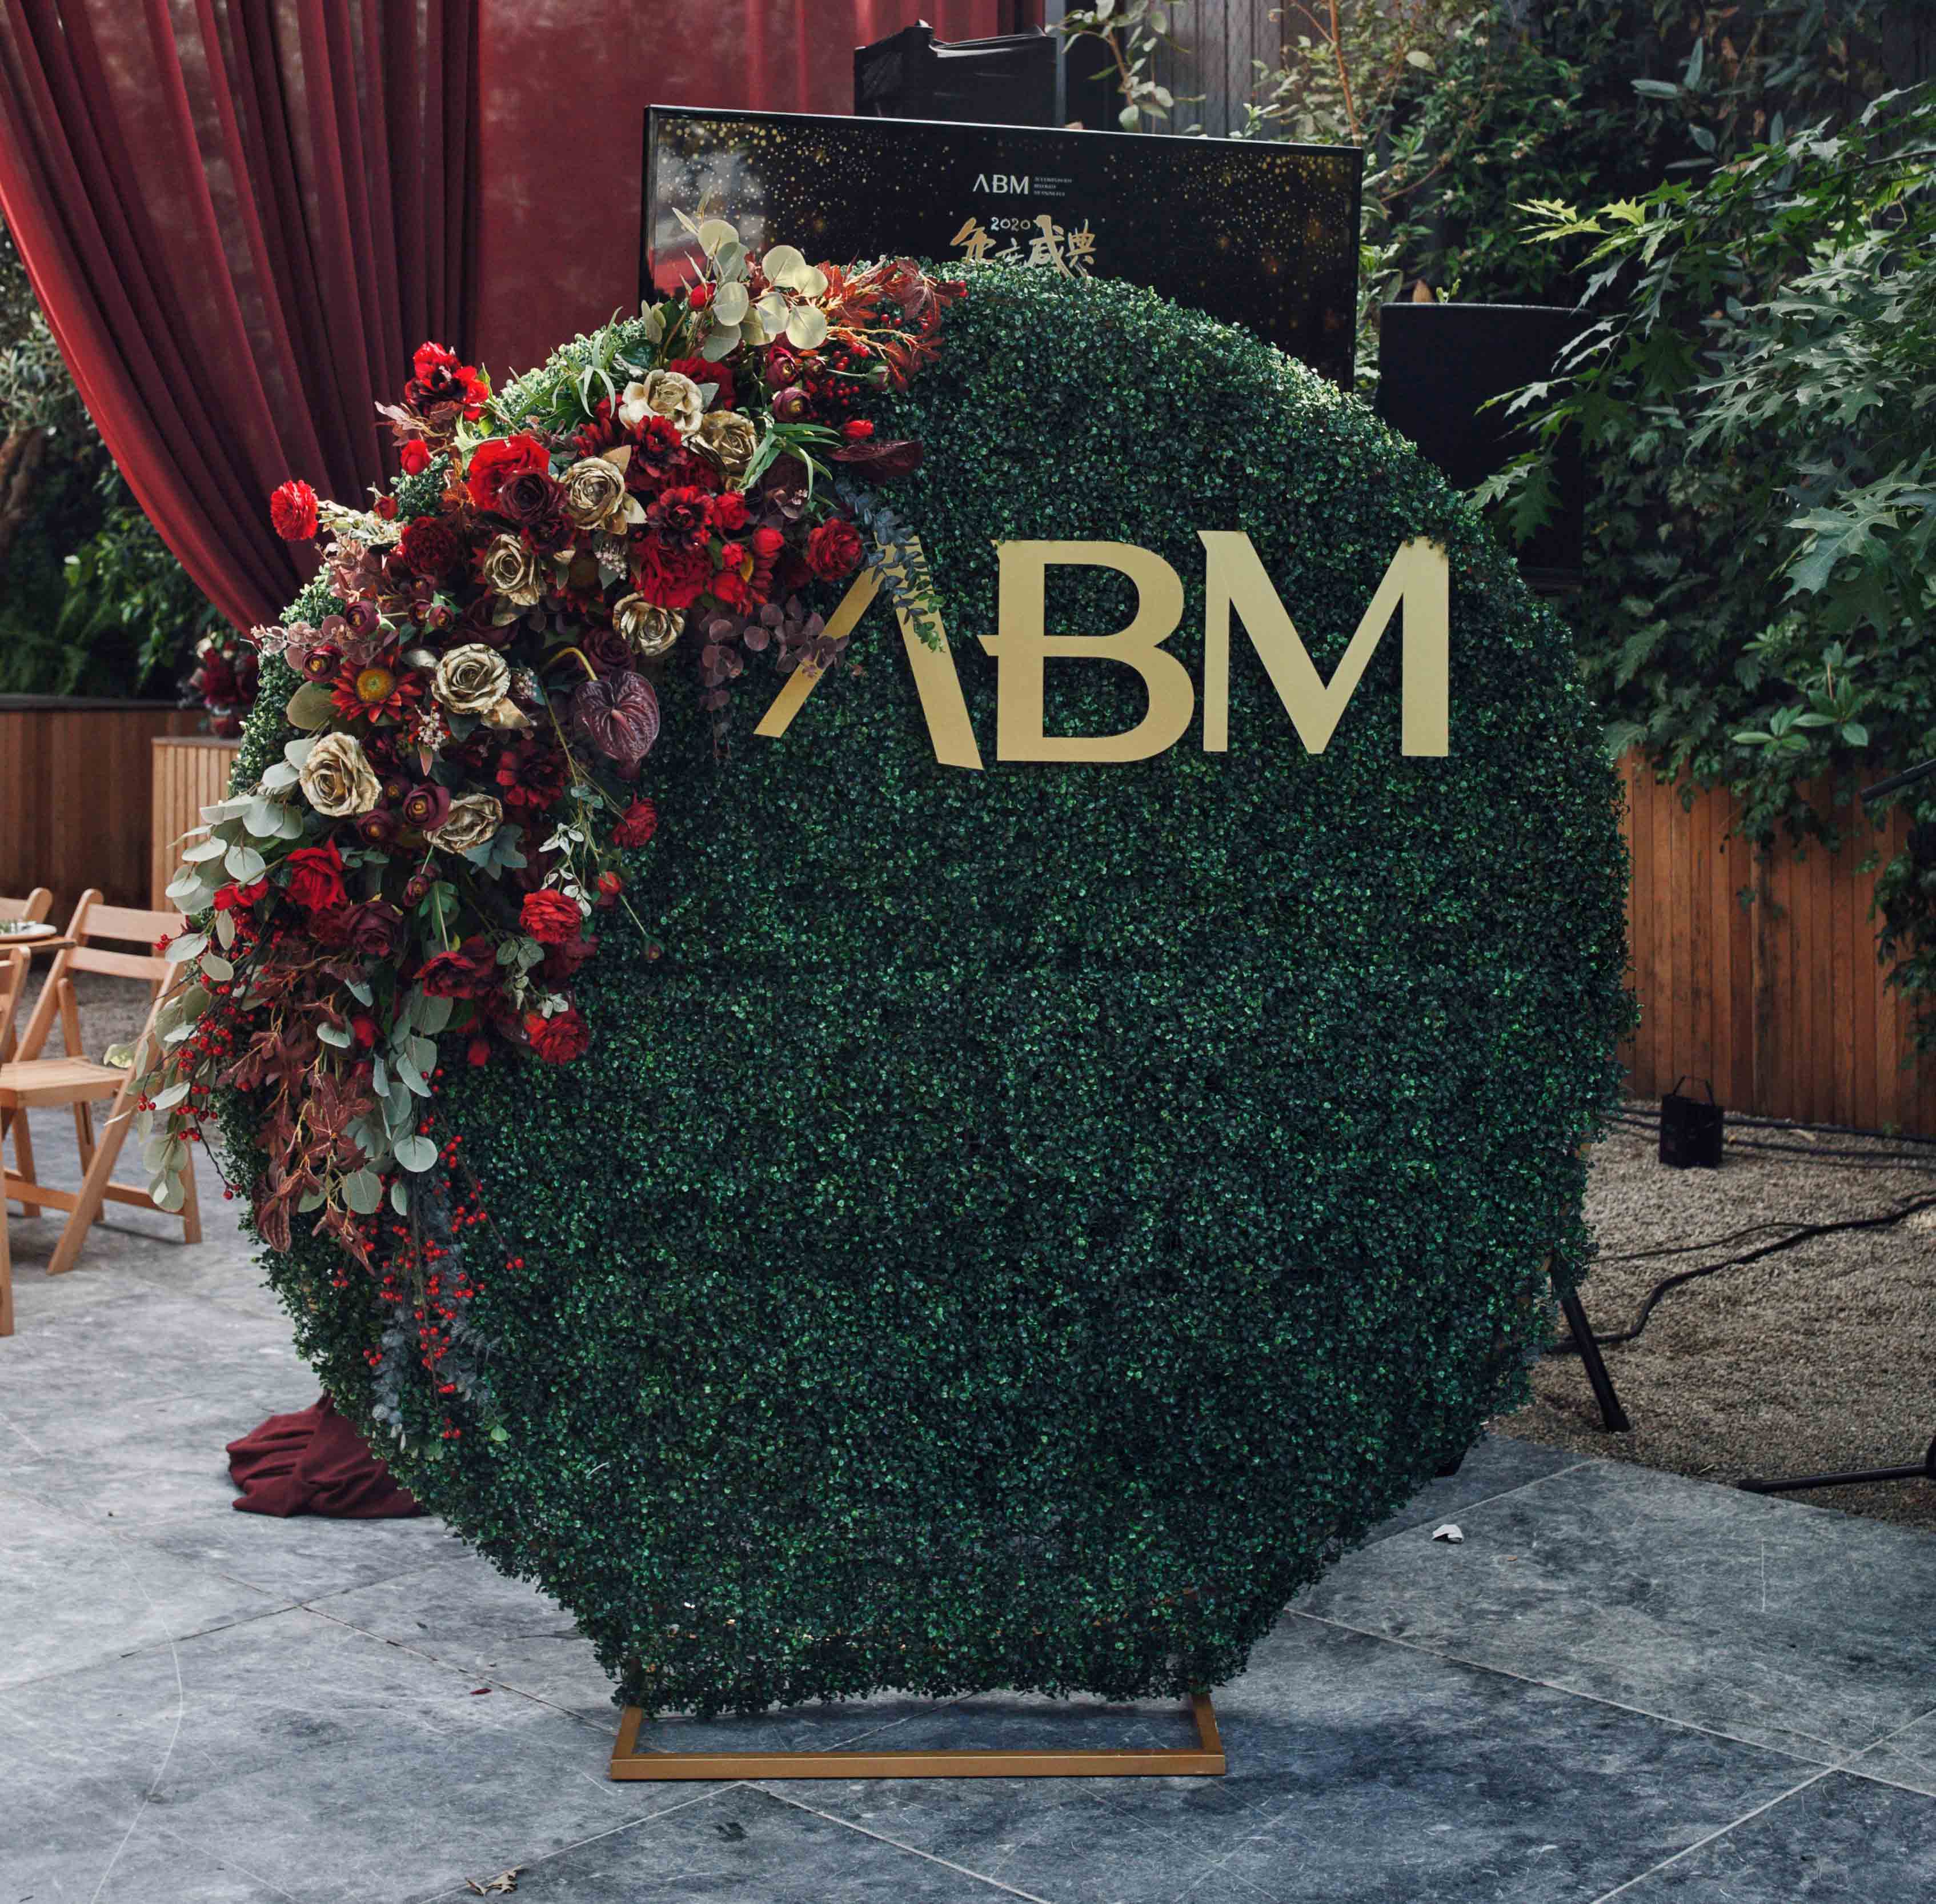 ABM Flower Arrangement by Luxe Dream Floral Studio